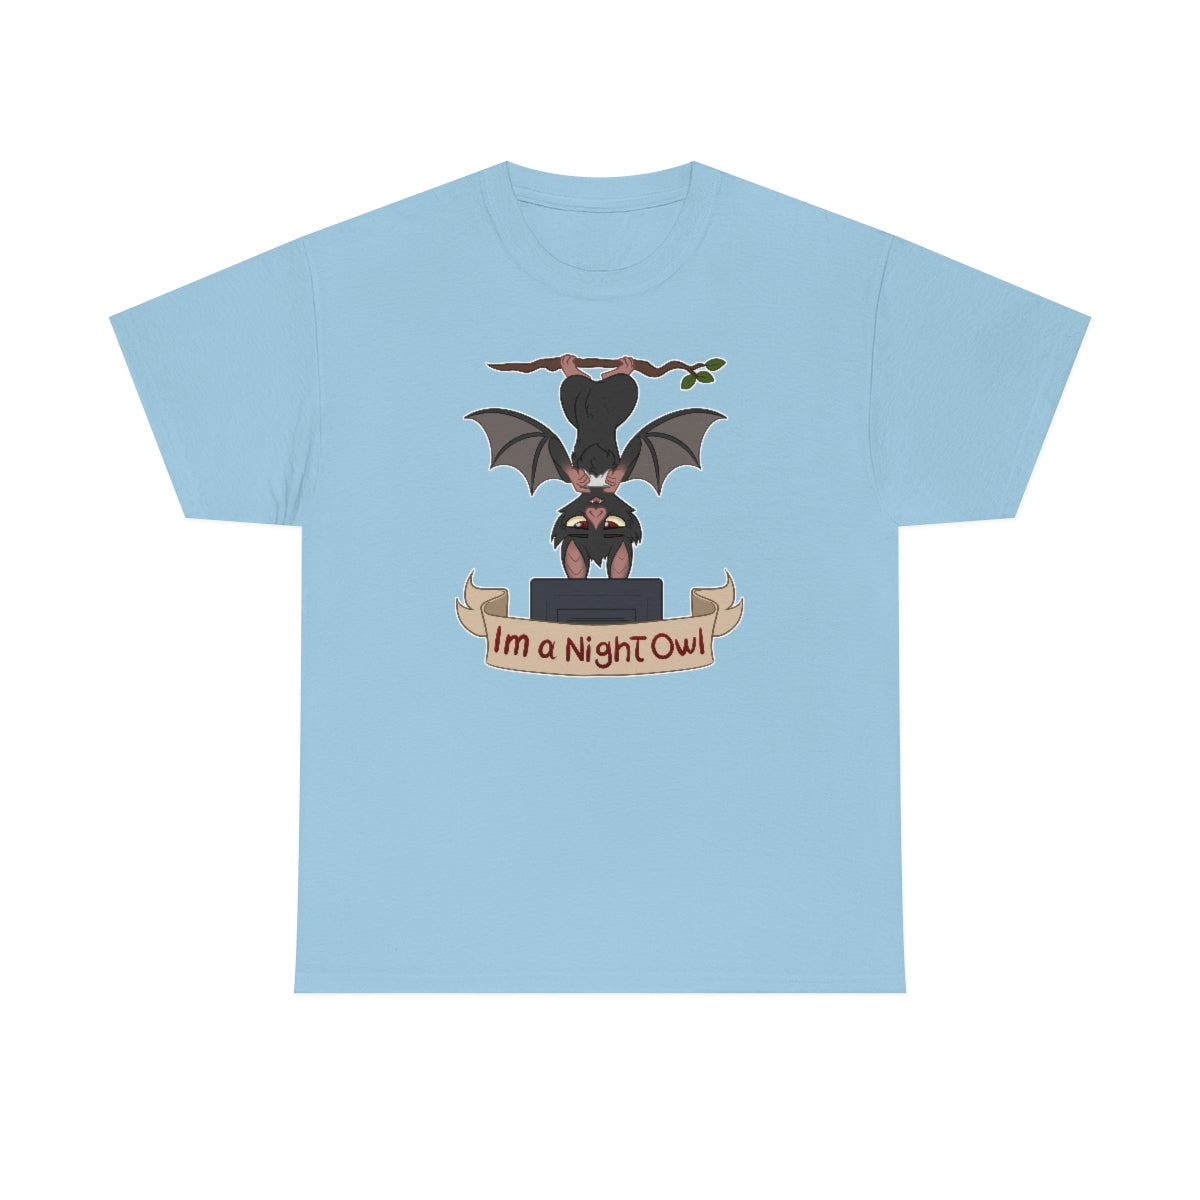 I am a Night Owl - T-Shirt T-Shirt Artworktee Light Blue S 